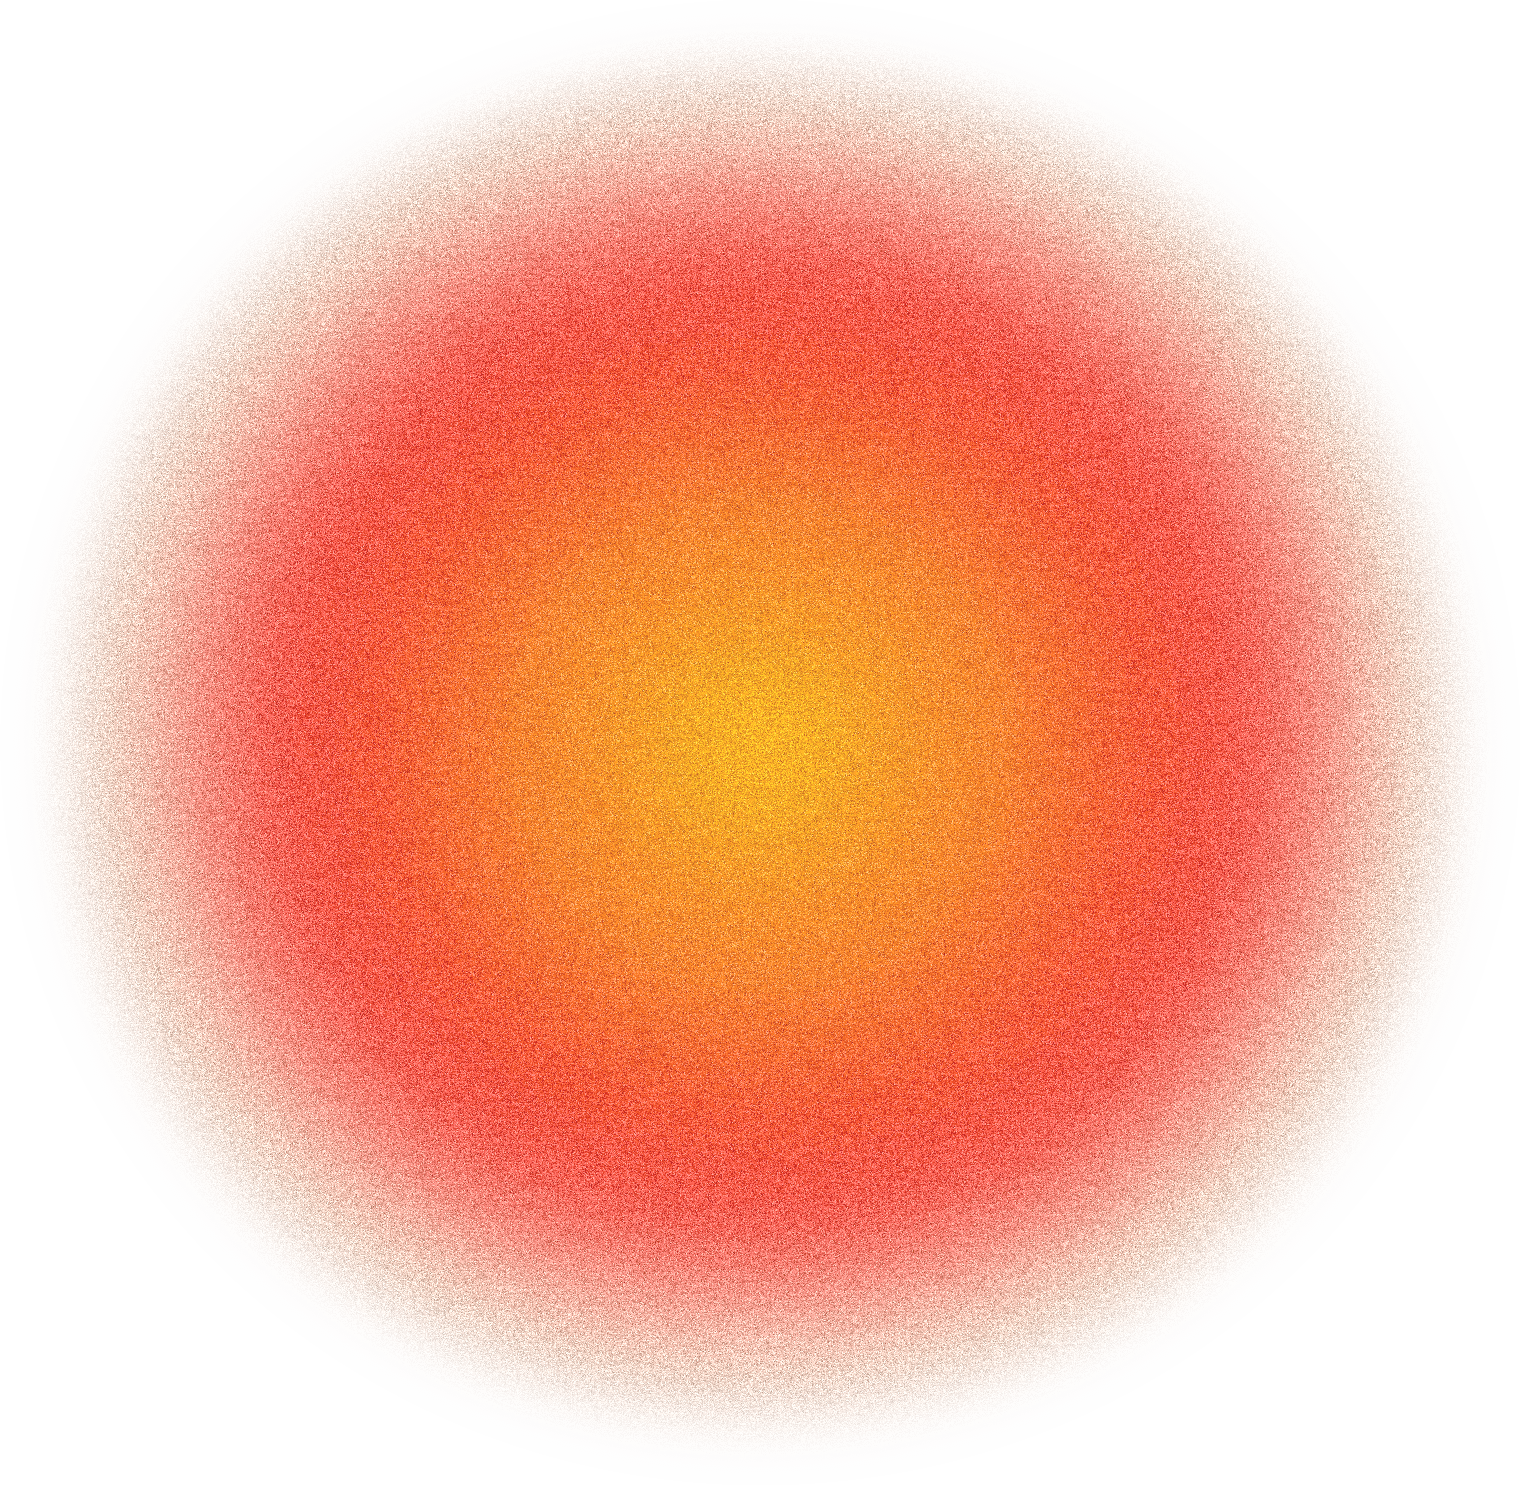 Sphere graphic